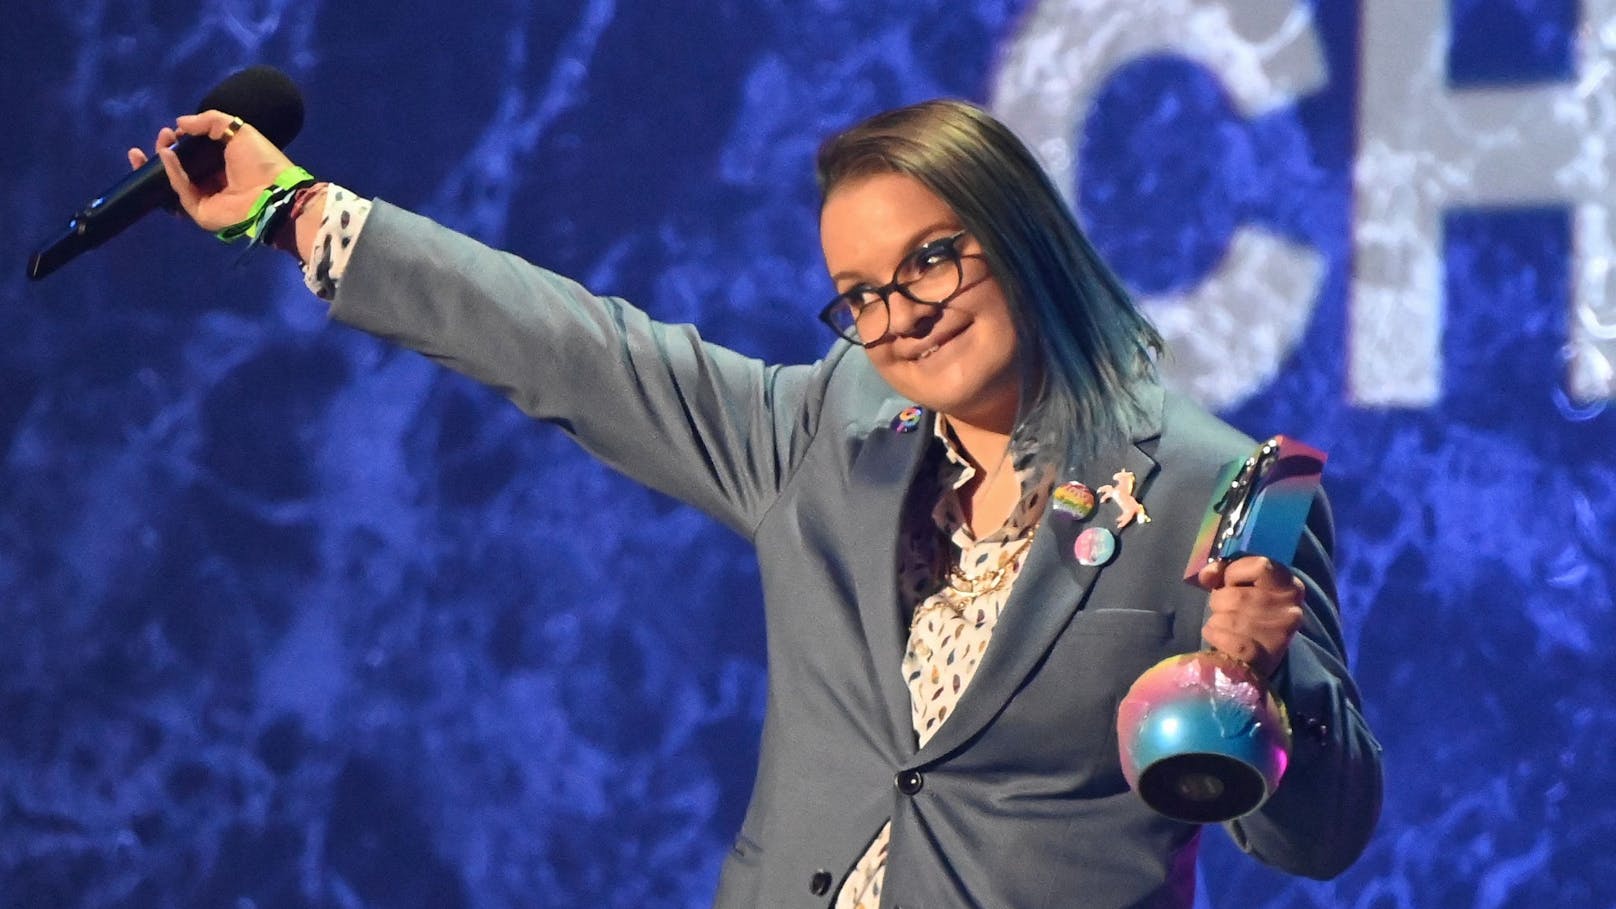 Zeichen für Toleranz gegenüber nicht-heterosexuellen Menschen: Viktoria Radvanyi erhält während des MTV Europe Music Awards den Preis "Generation Change".